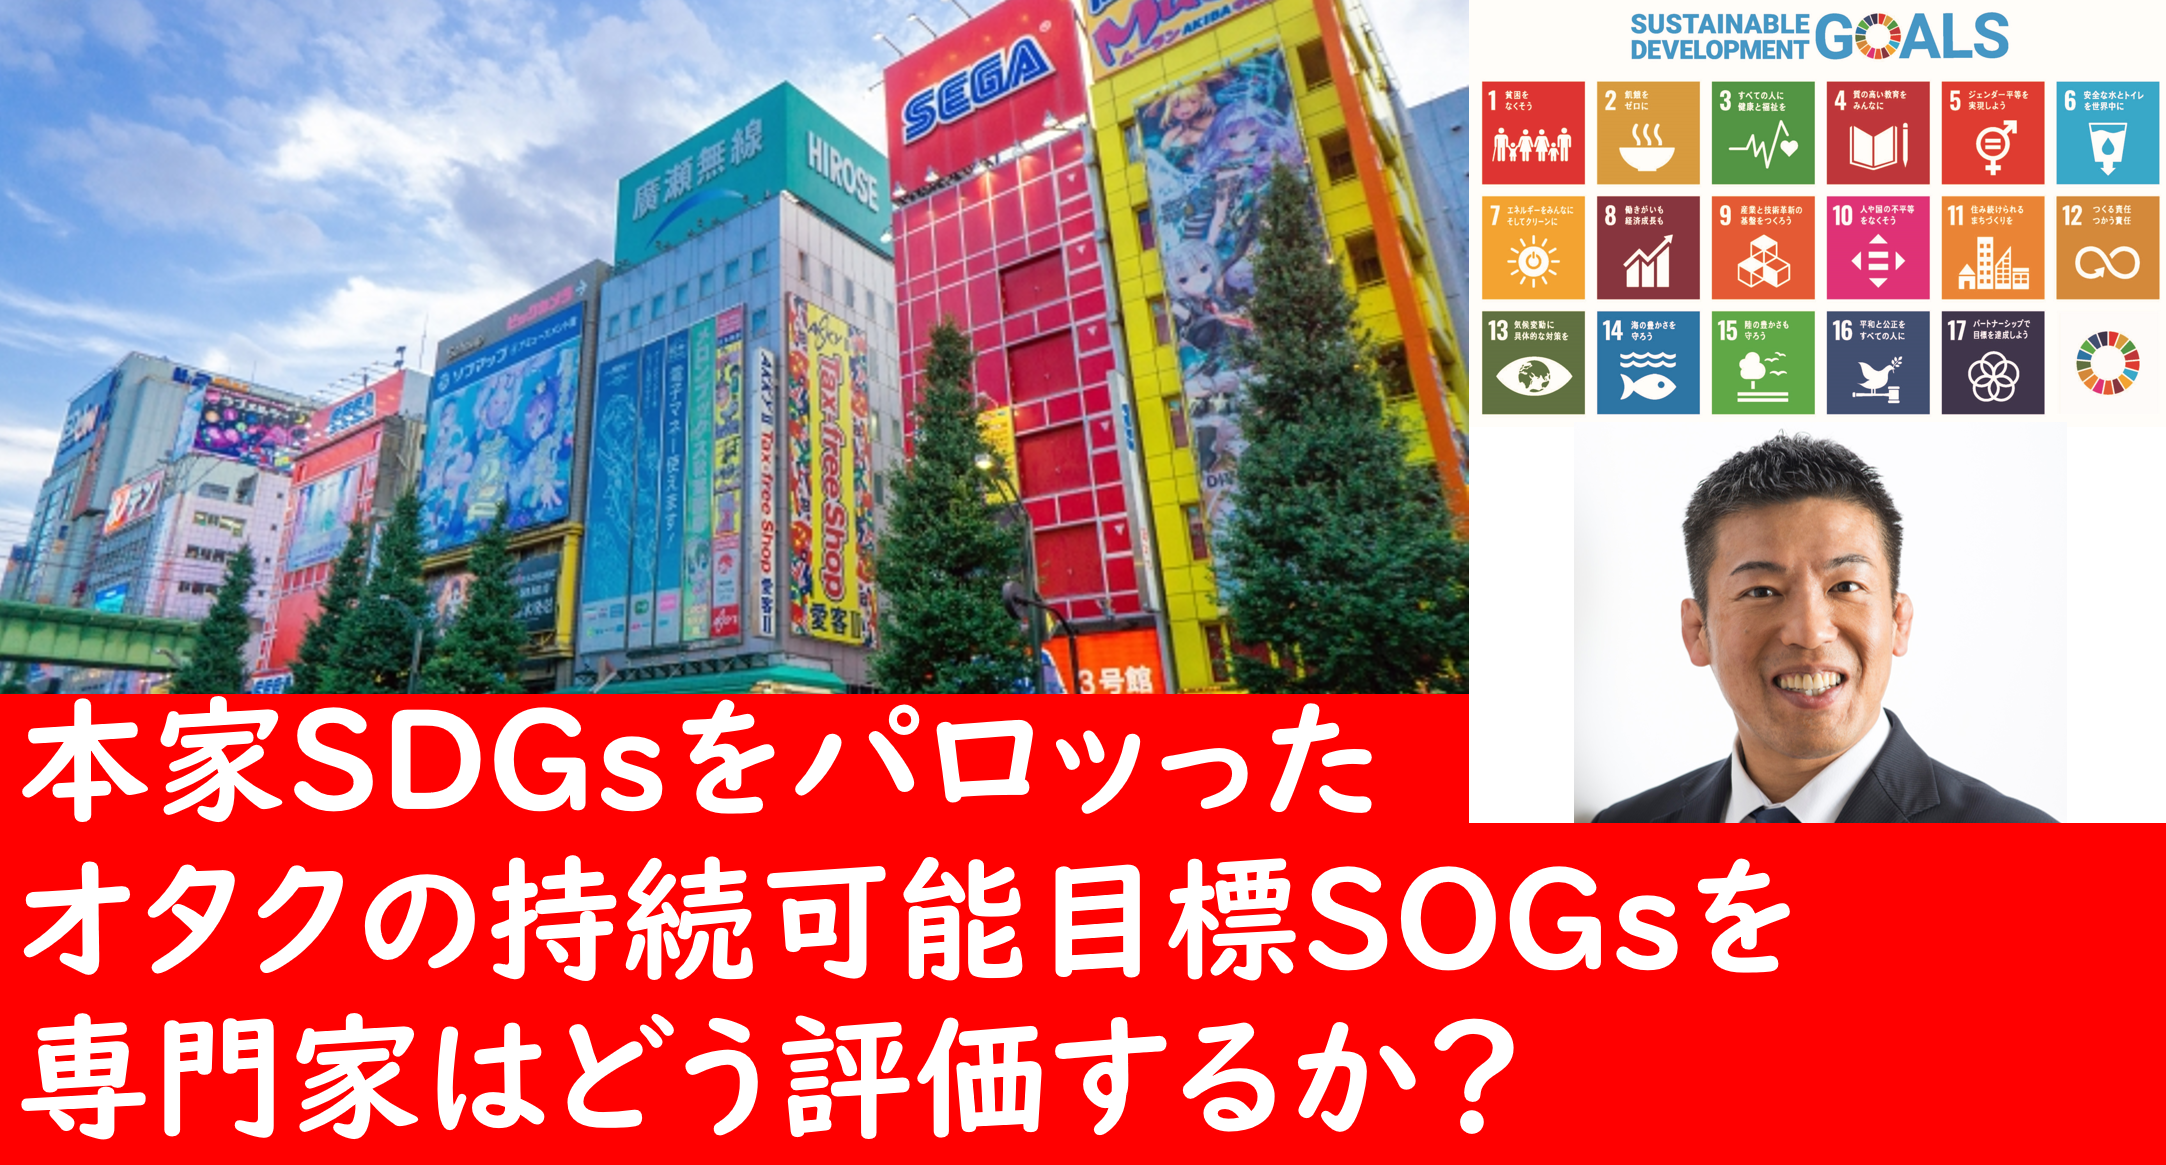 サムネ　本家SDGsをパロッった、オタクの持続可能目標SOGsを専門家はどう評価するか？　png